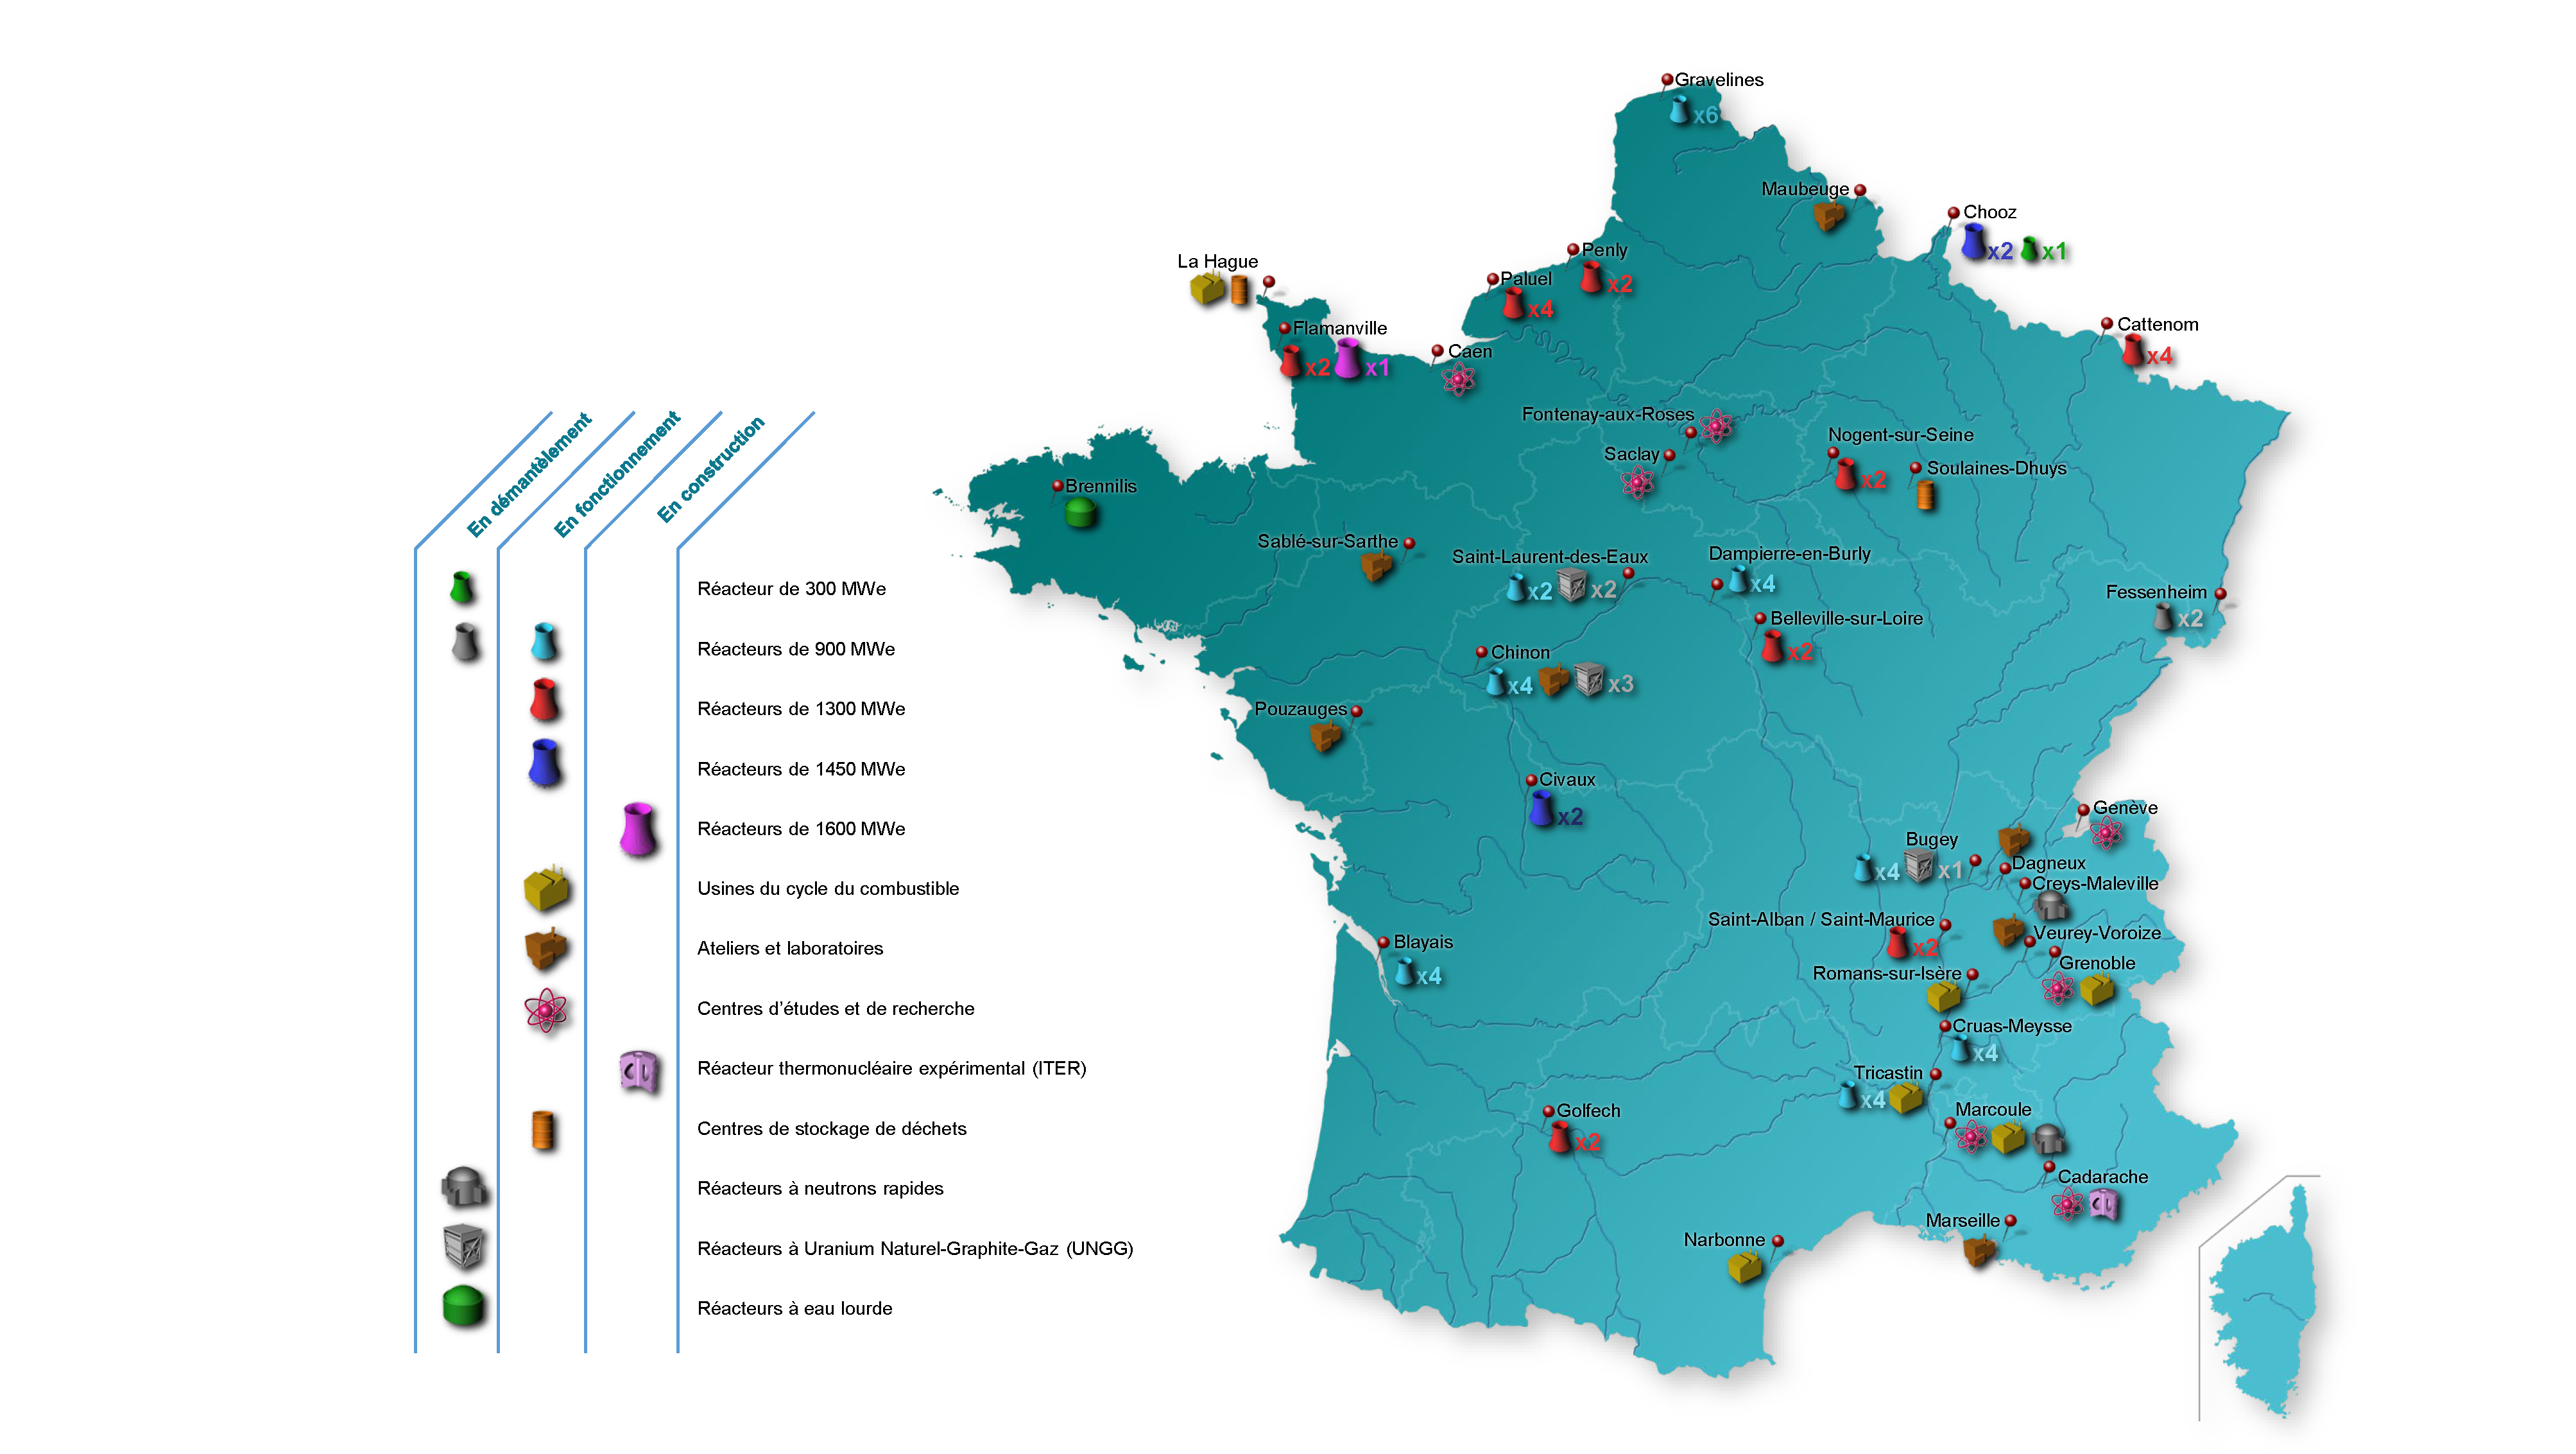 Carte des installations nucléaires en France. On y voit : 18 centrales en activité et 11 installations en démantèlement ; 2 installations en construction ; 2 centres de stockage de déchets radioactifs ; 5 usines du cycle de traitement du combustible nucléaire ; 5 centres de recherche. Tous ces sites sont majoritairement situés le long de la Loire, du Rhône et de la Manche.